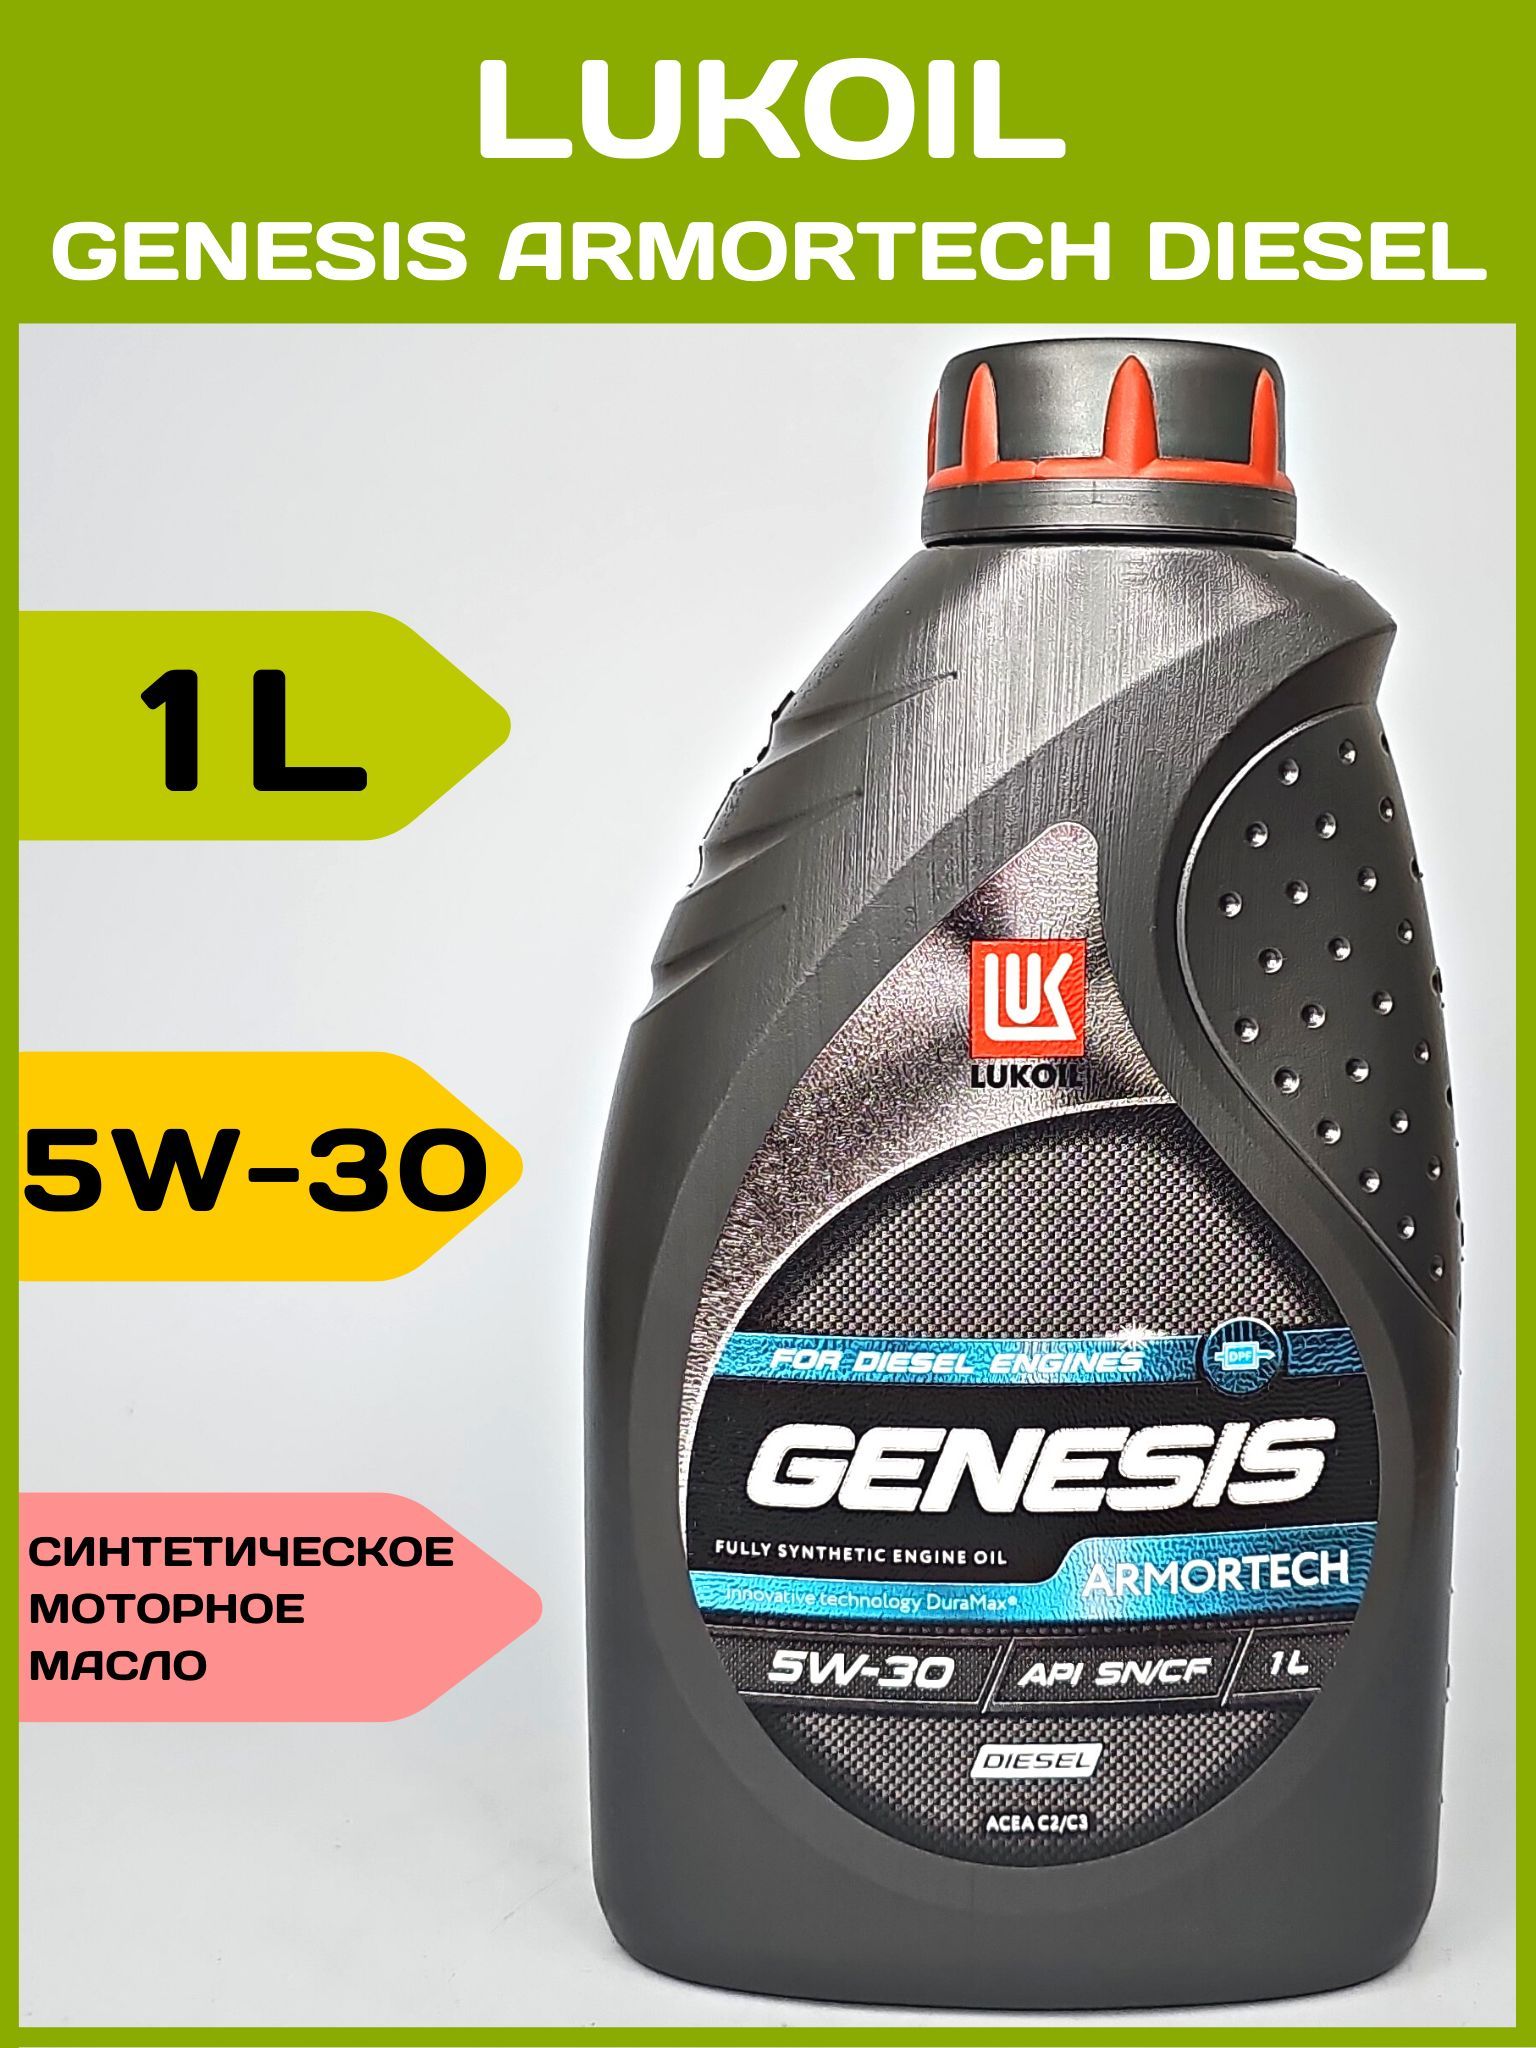 Лукойл 5 30 отзывы. Lukoil Genesis Armortech dexos2. Lukoil Genesis 5w30. Лукойл Генезис 5в30 дизель. Армотек масло Генезис 5w-30.